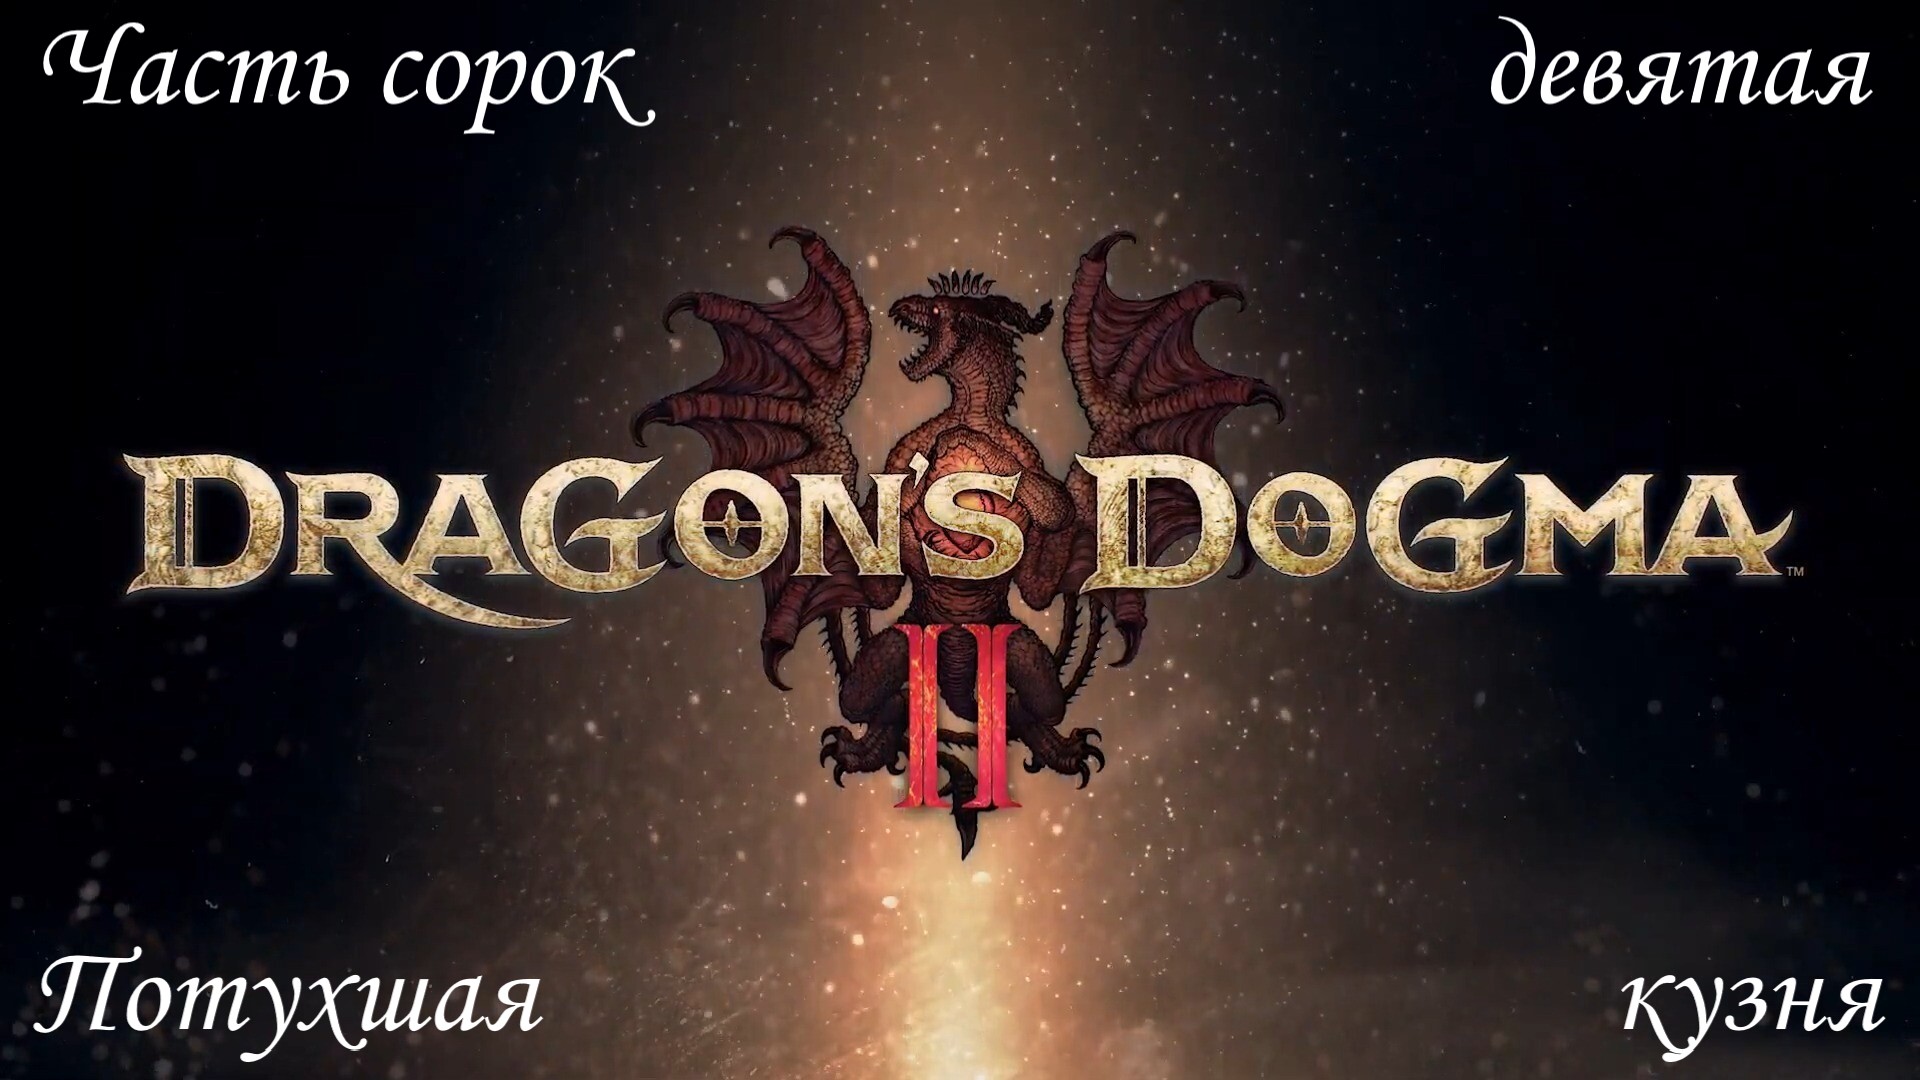 Прохождение Dragons Dogma 2 на русском - Часть сорок девятая. Потухшая кузня